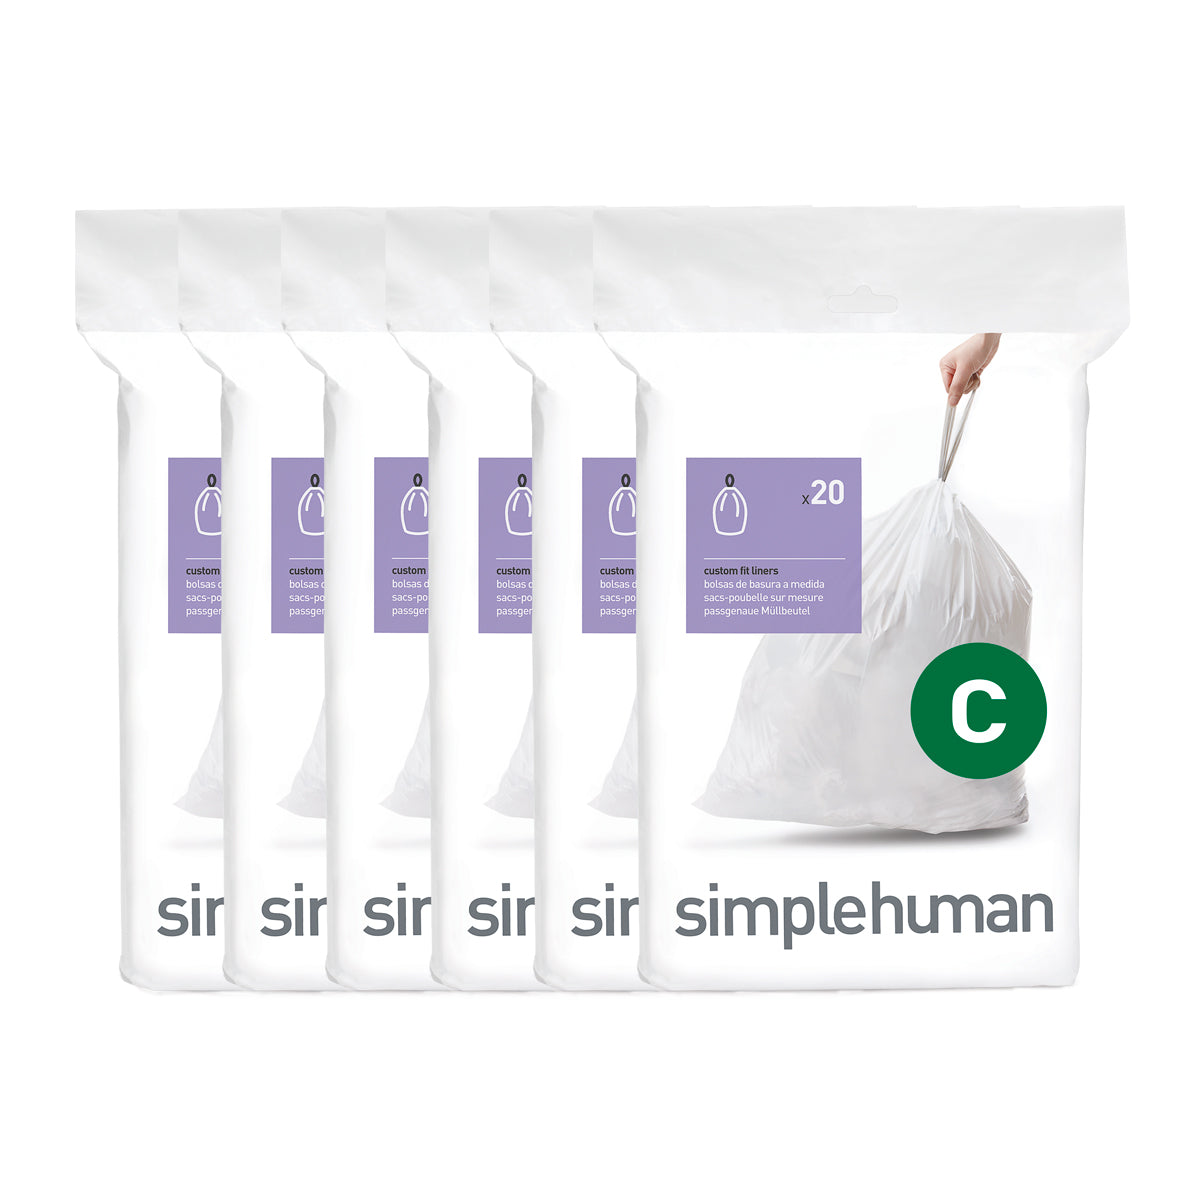 Repl. Simplehuman C Size 10 - 12L / 2.6 - 3.2 Gal. Garbage Bag